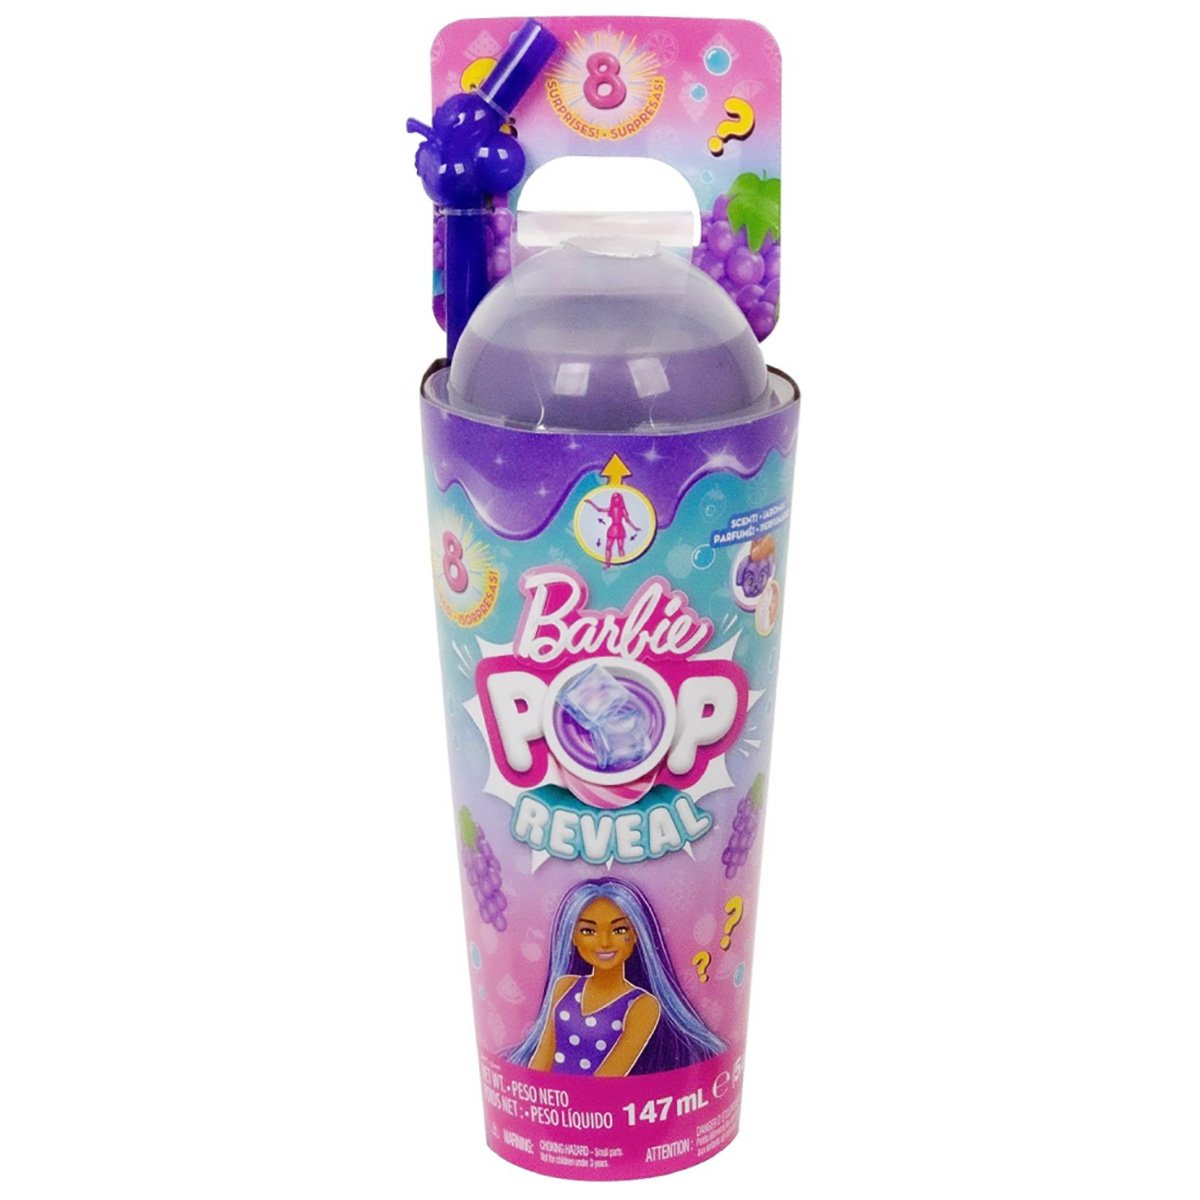 Papusa cu accesorii Barbie, Color Pop Reveal Fruit, Strugure, 8 surprize, HNW44